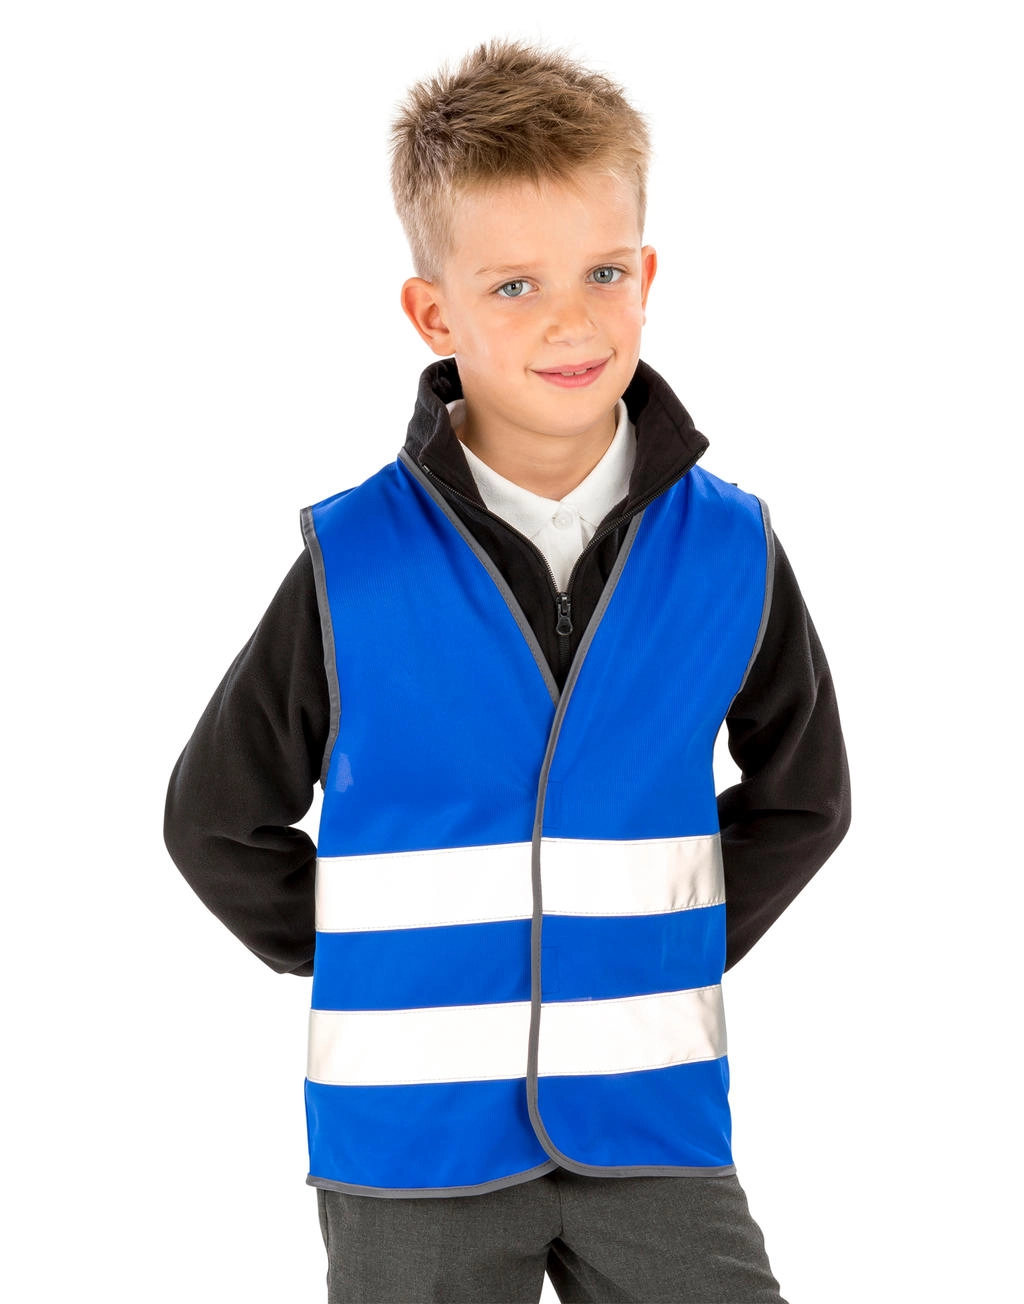 Junior Enhanced Visibility Vest zum Besticken und Bedrucken mit Ihren Logo, Schriftzug oder Motiv.